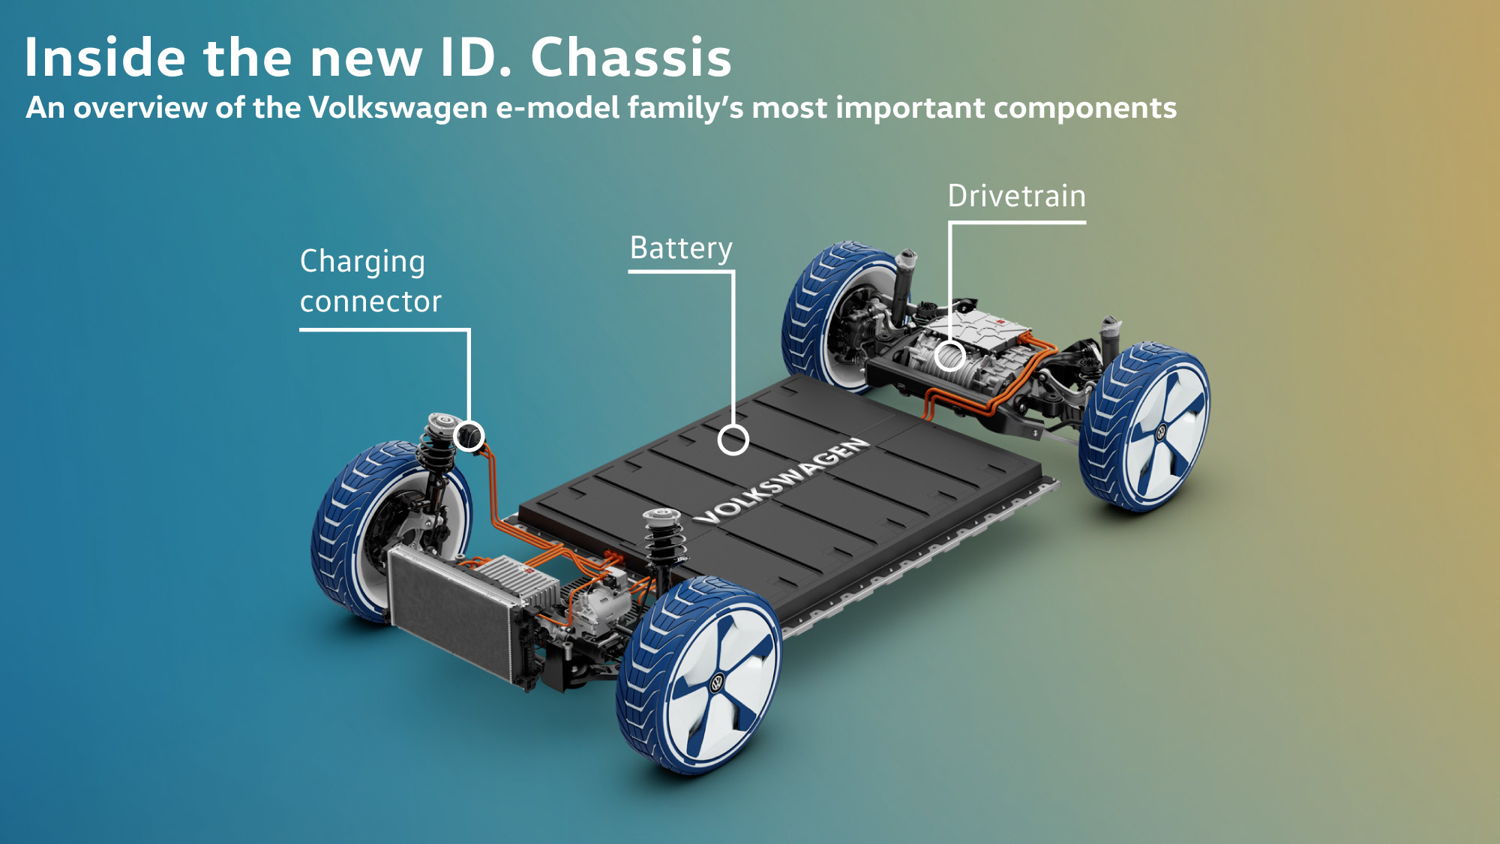 La MEB es adecuada para diferentes segmentos, desde el ID. compacto y el SUV hasta sedanes y vans. 